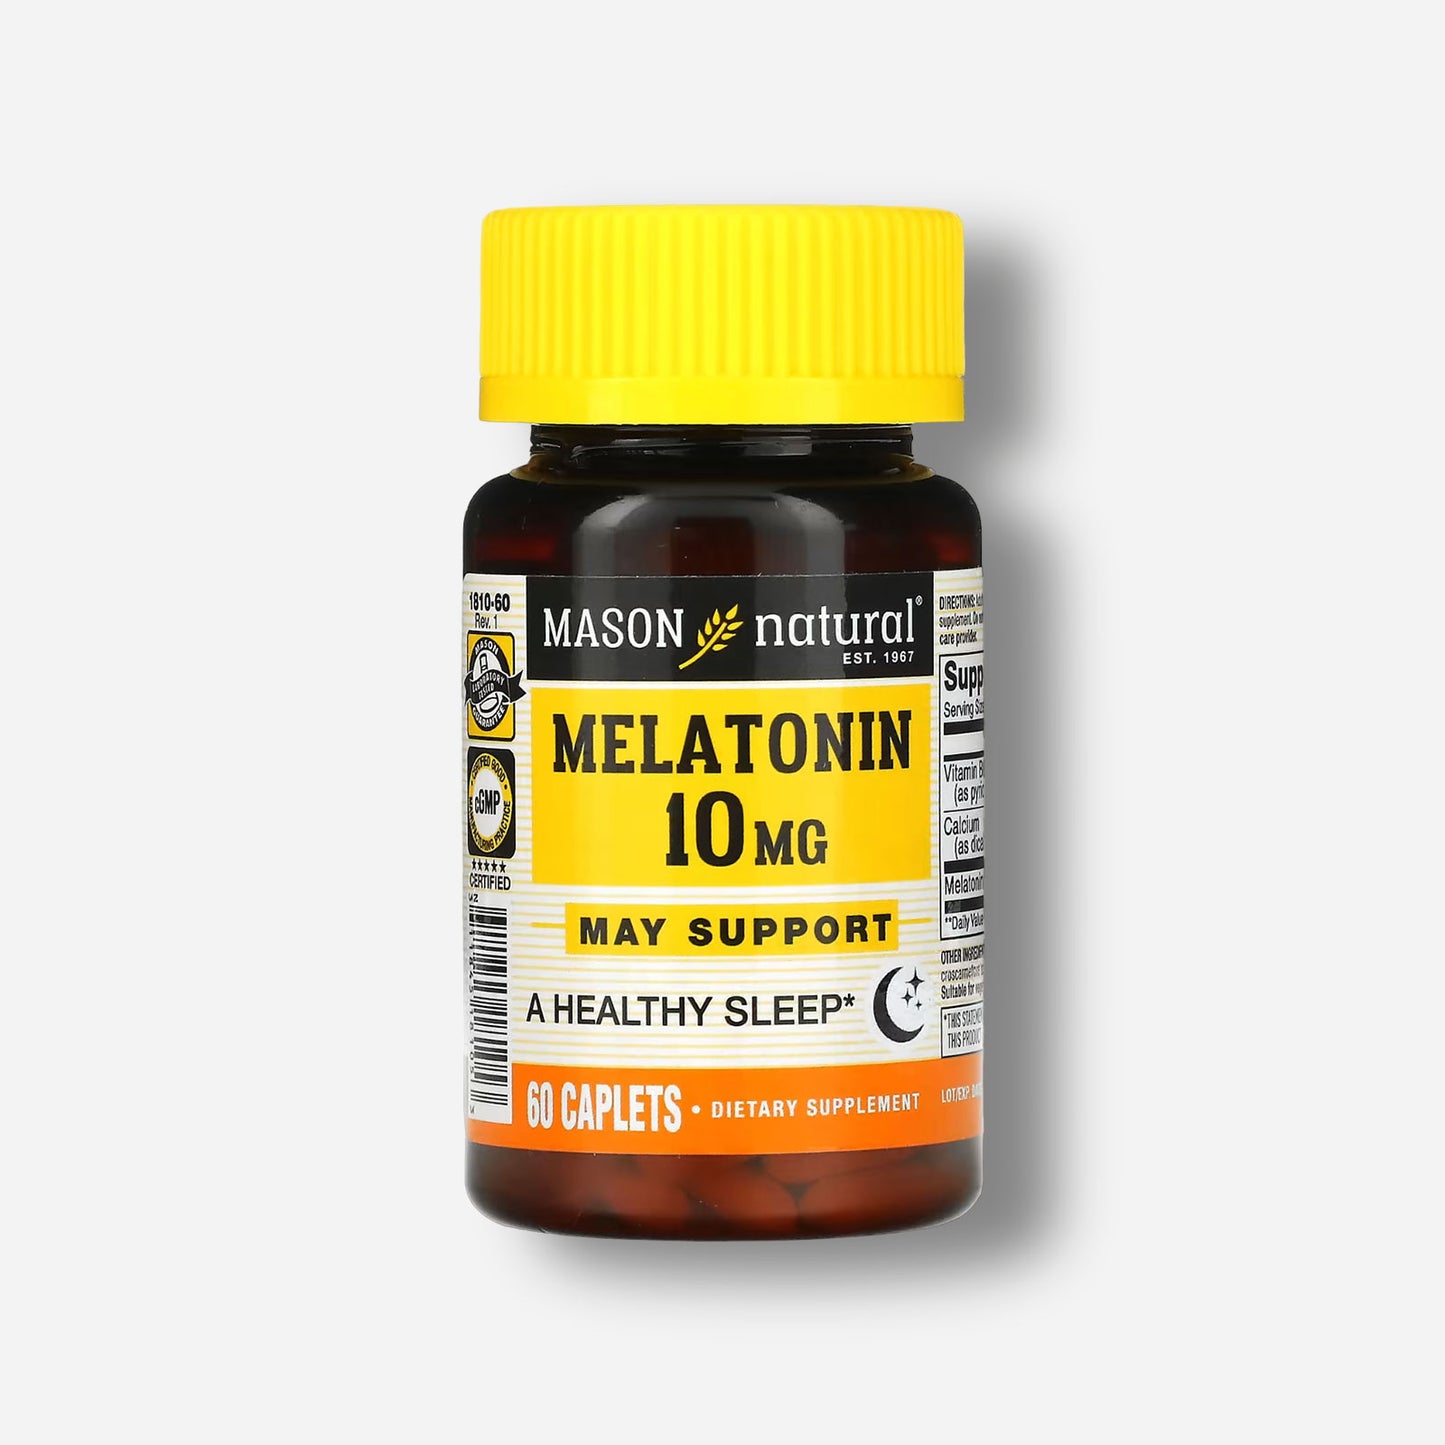 MASON NATURAL Melatonin 10mg